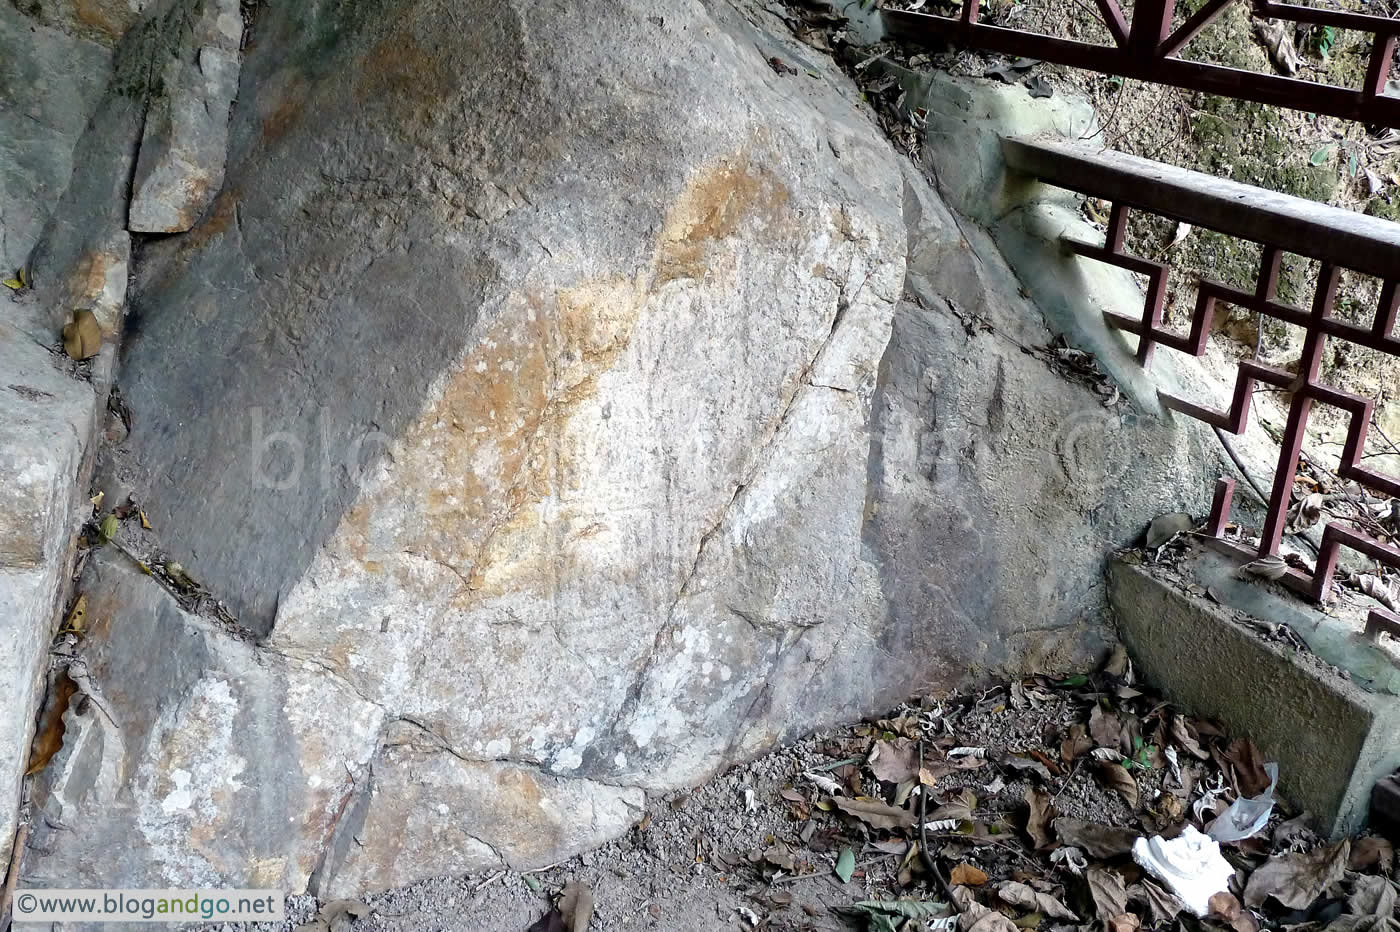 Lantau Trail 9 - Shek Pik Rock Carving